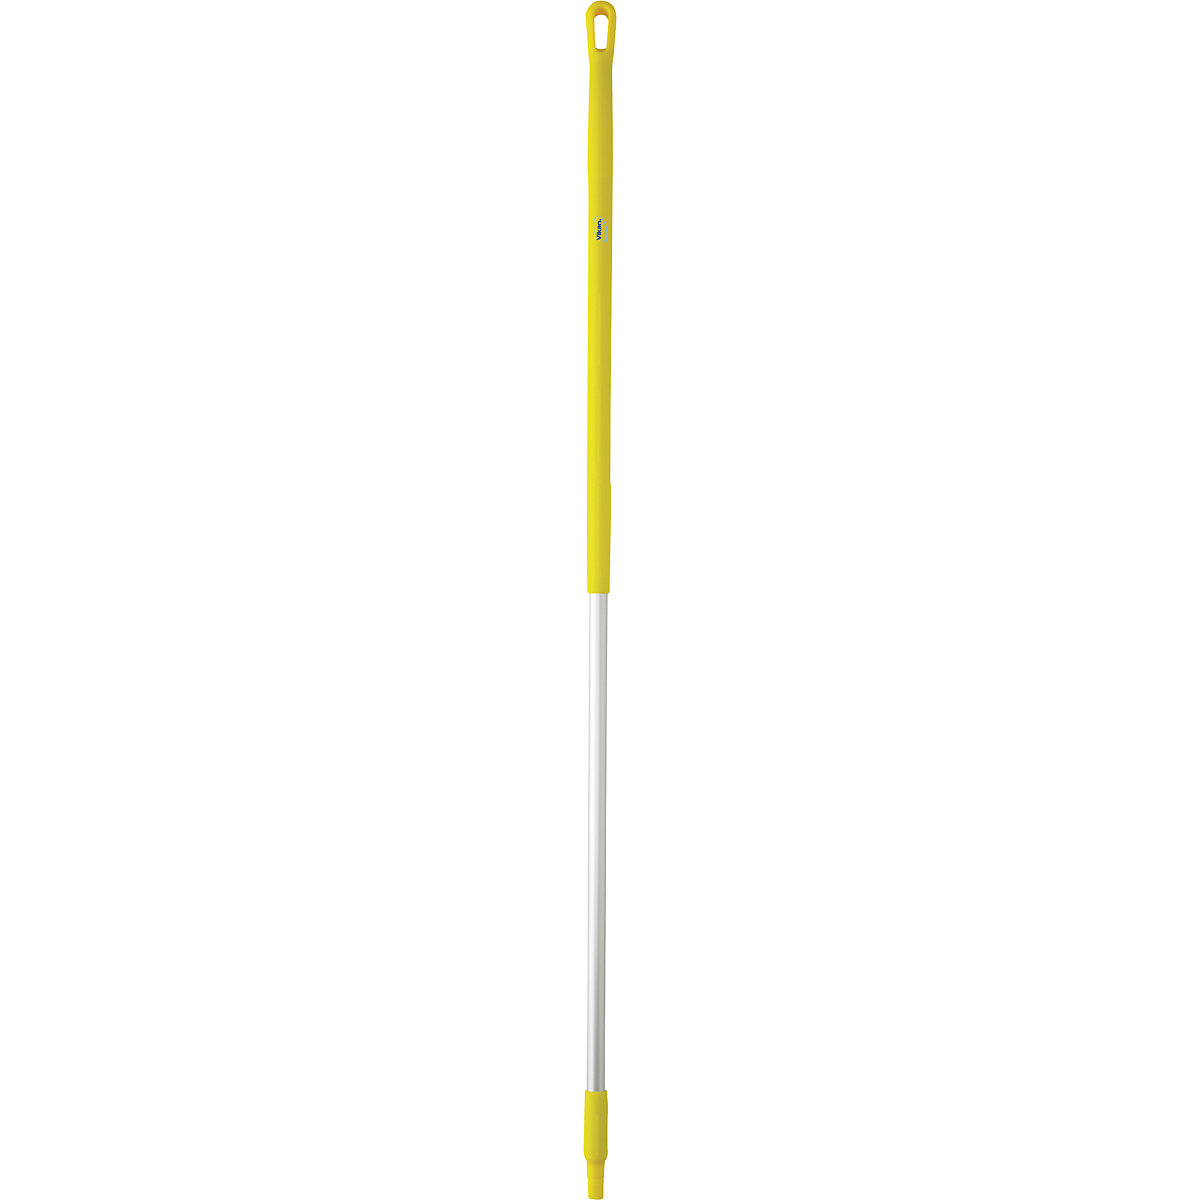 Aluminijska drška, ergonomična – Vikan, Ø 31 mm, dužina 1510 mm, pak. 10 kom., u žutoj boji-11